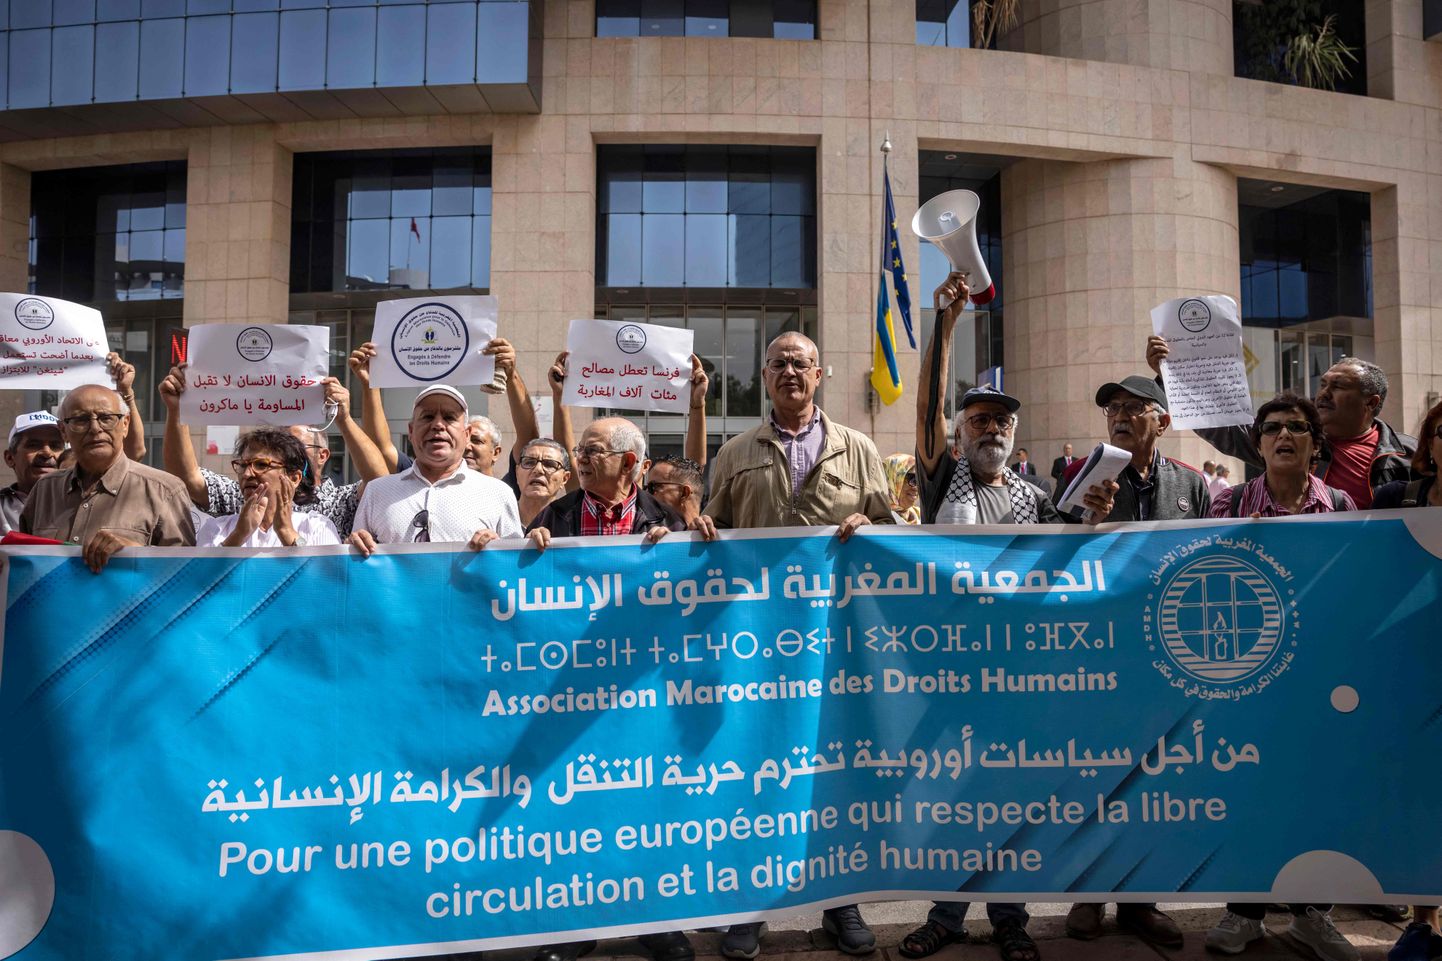 Maroko inimõigusühingu liikmed avaldasid 2022. aasta oktoobris Rabatis Euroopa Liidu büroode ees meeleavaldust reisiviisade piiramise vastu. Pilt on illustreeriv.